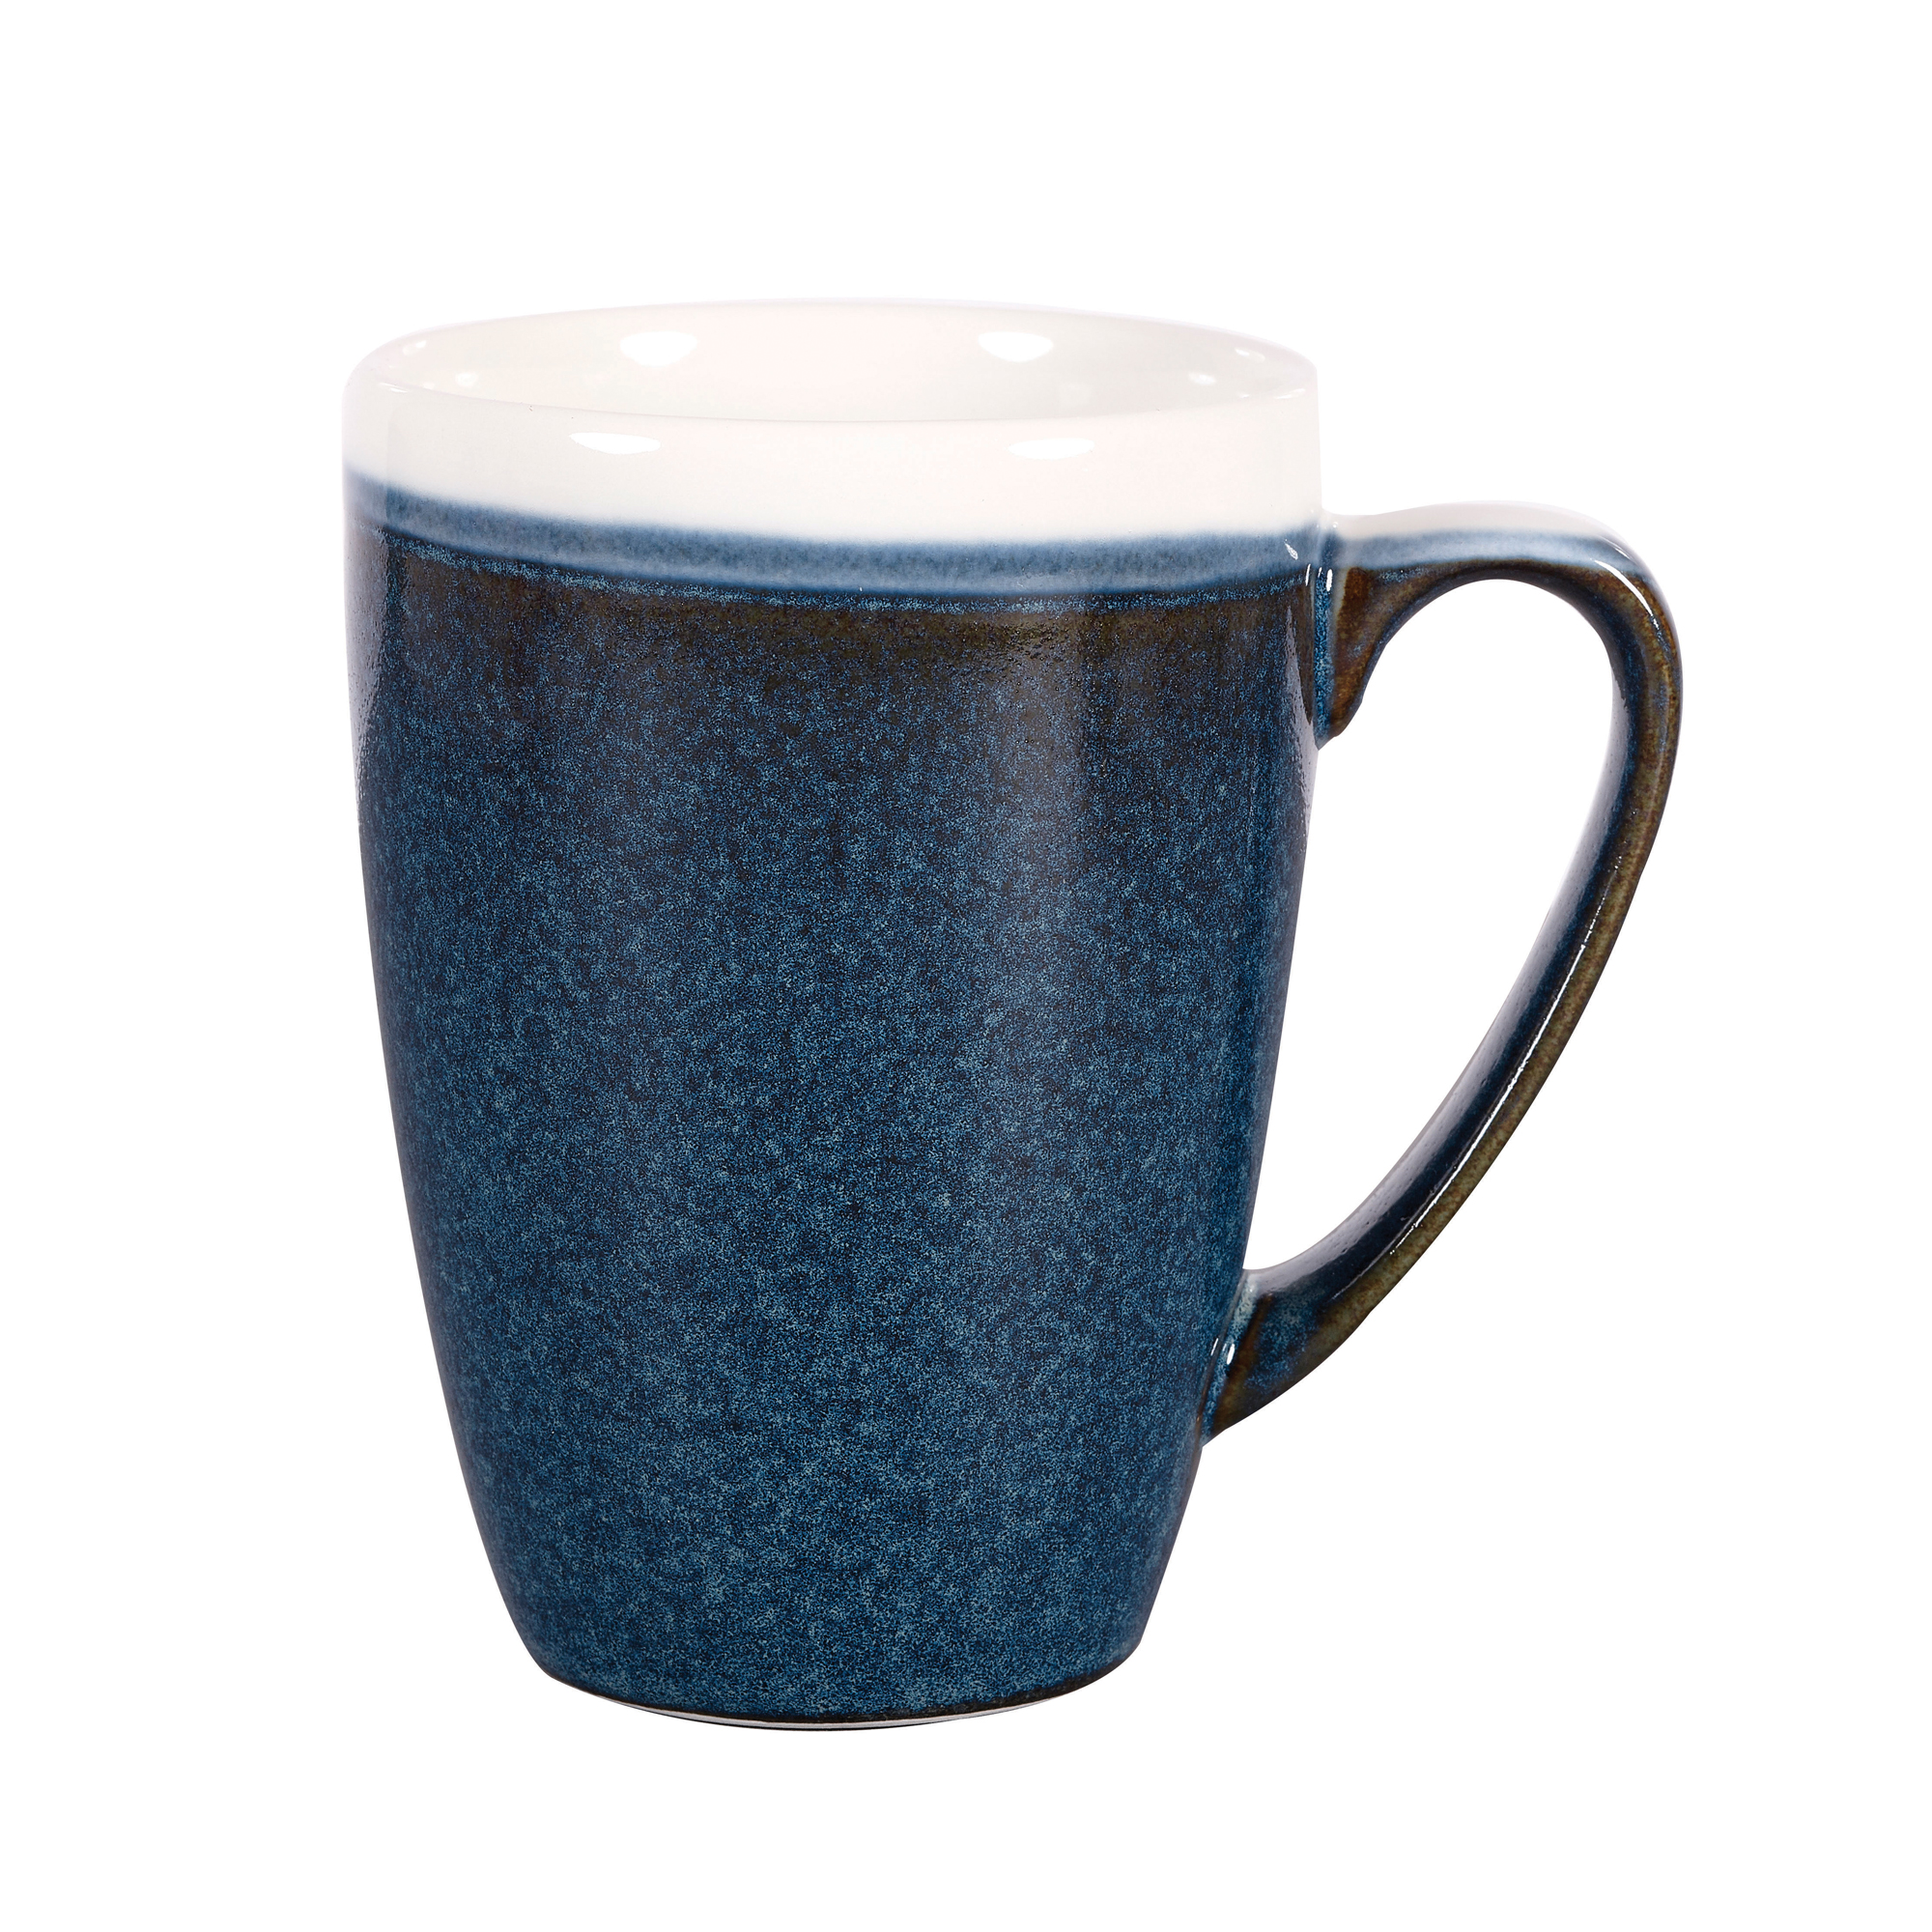 Monochrome Sapphire Blue Mugs at drinkstuff